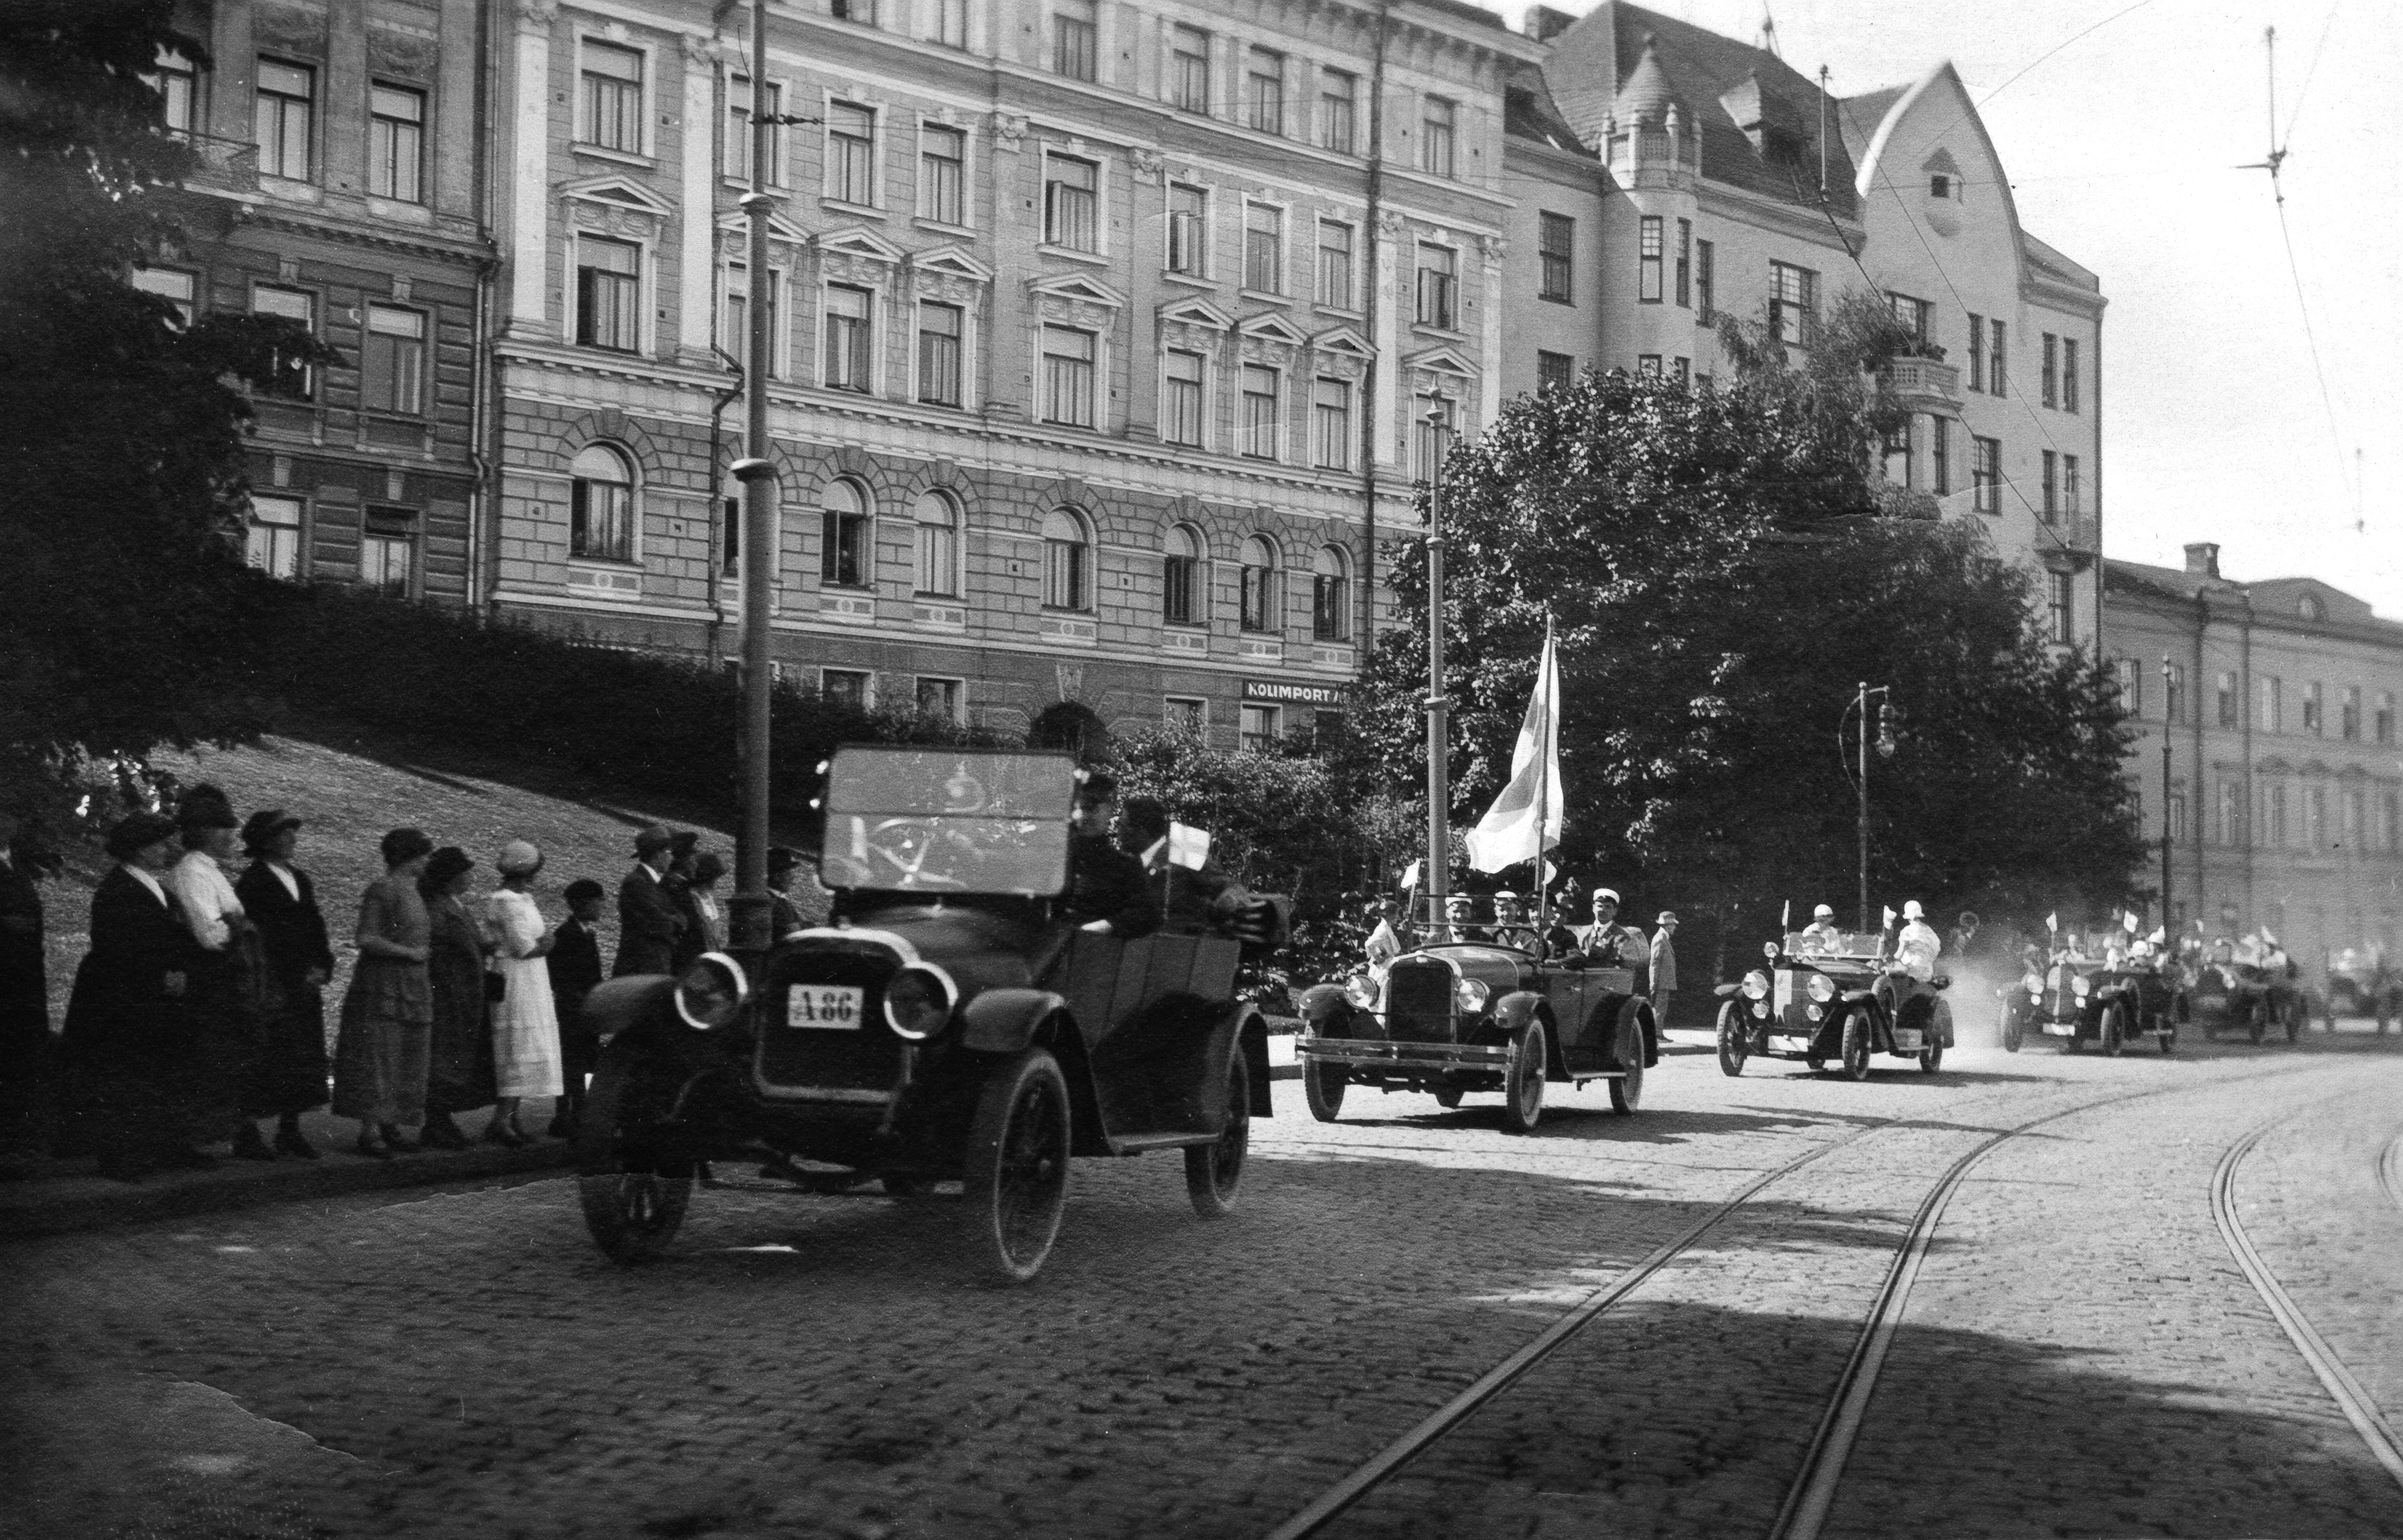 Pariisin olympialaisista saapuville urheilijoille järjestetty autokulkue Etelärannassa 21.7.1924. Matkalla Kaivopuistoon.